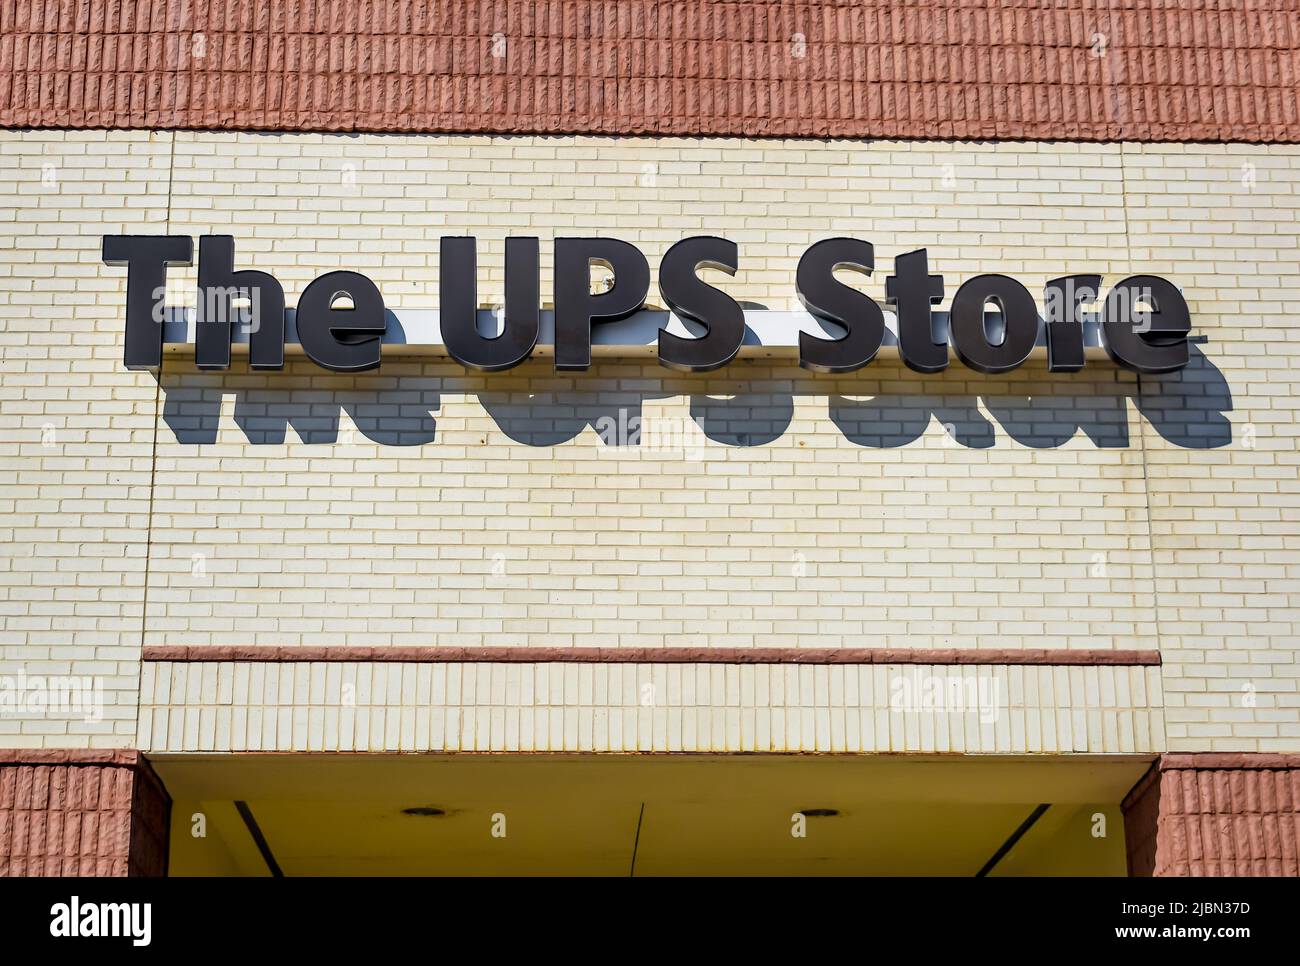 Marchio e logo della facciata esterna dell'UPS Store con lettere nere su mattoni beige con finiture color marrone chiaro e ombre. Foto Stock